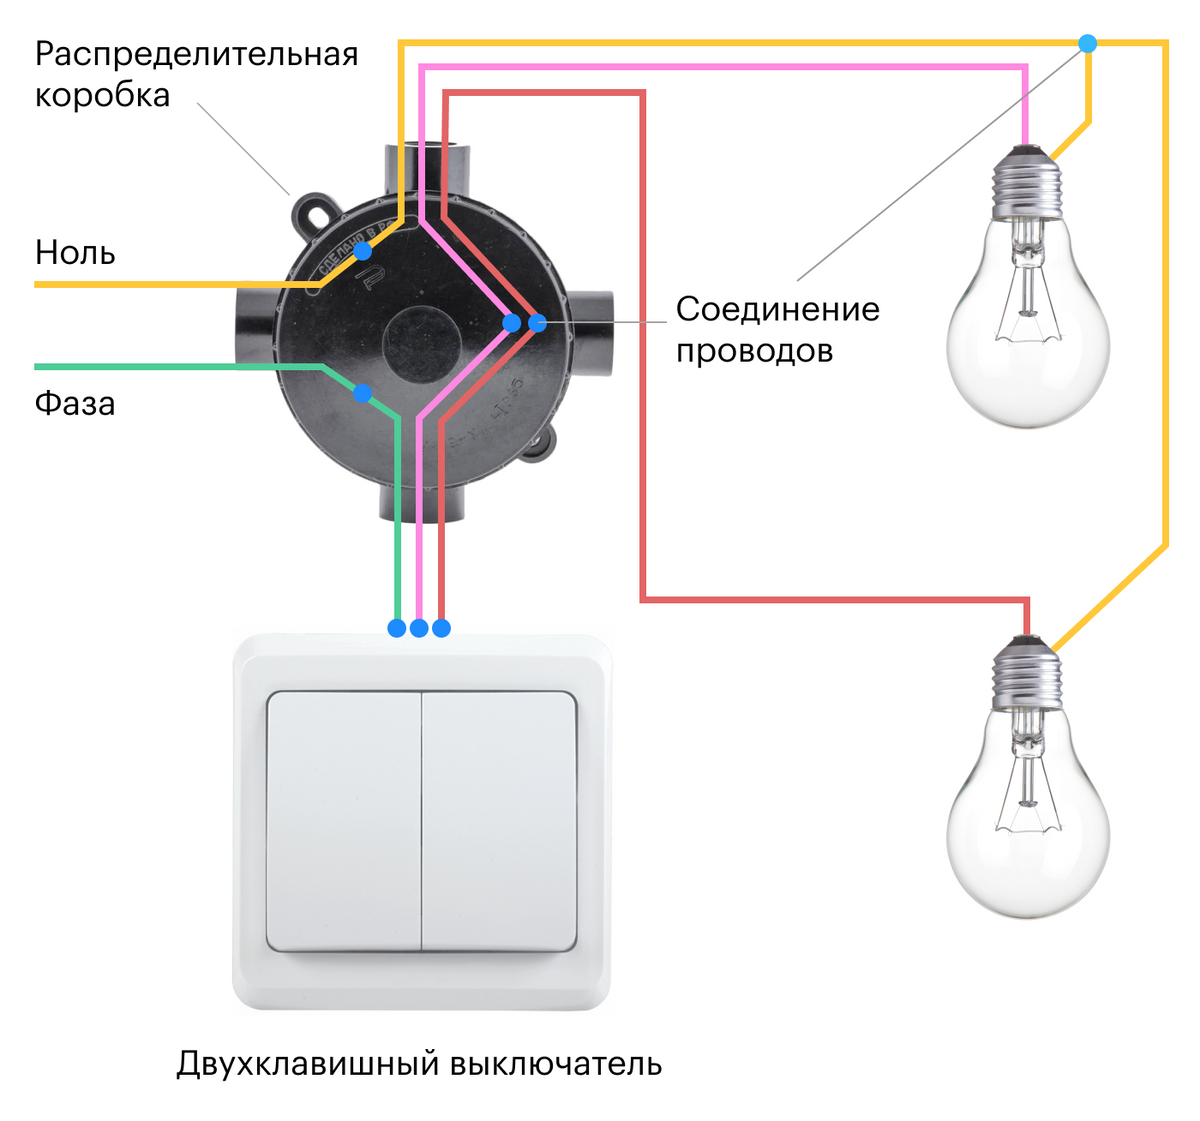 Соединение проводов выключателя. Соединение одинарного выключателя схема подключения. Схема подключения выключателя на две лампочки. Схема подключения распределительная коробка выключатель светильник. Схема подключения лампочки и выключателя к распред коробке.